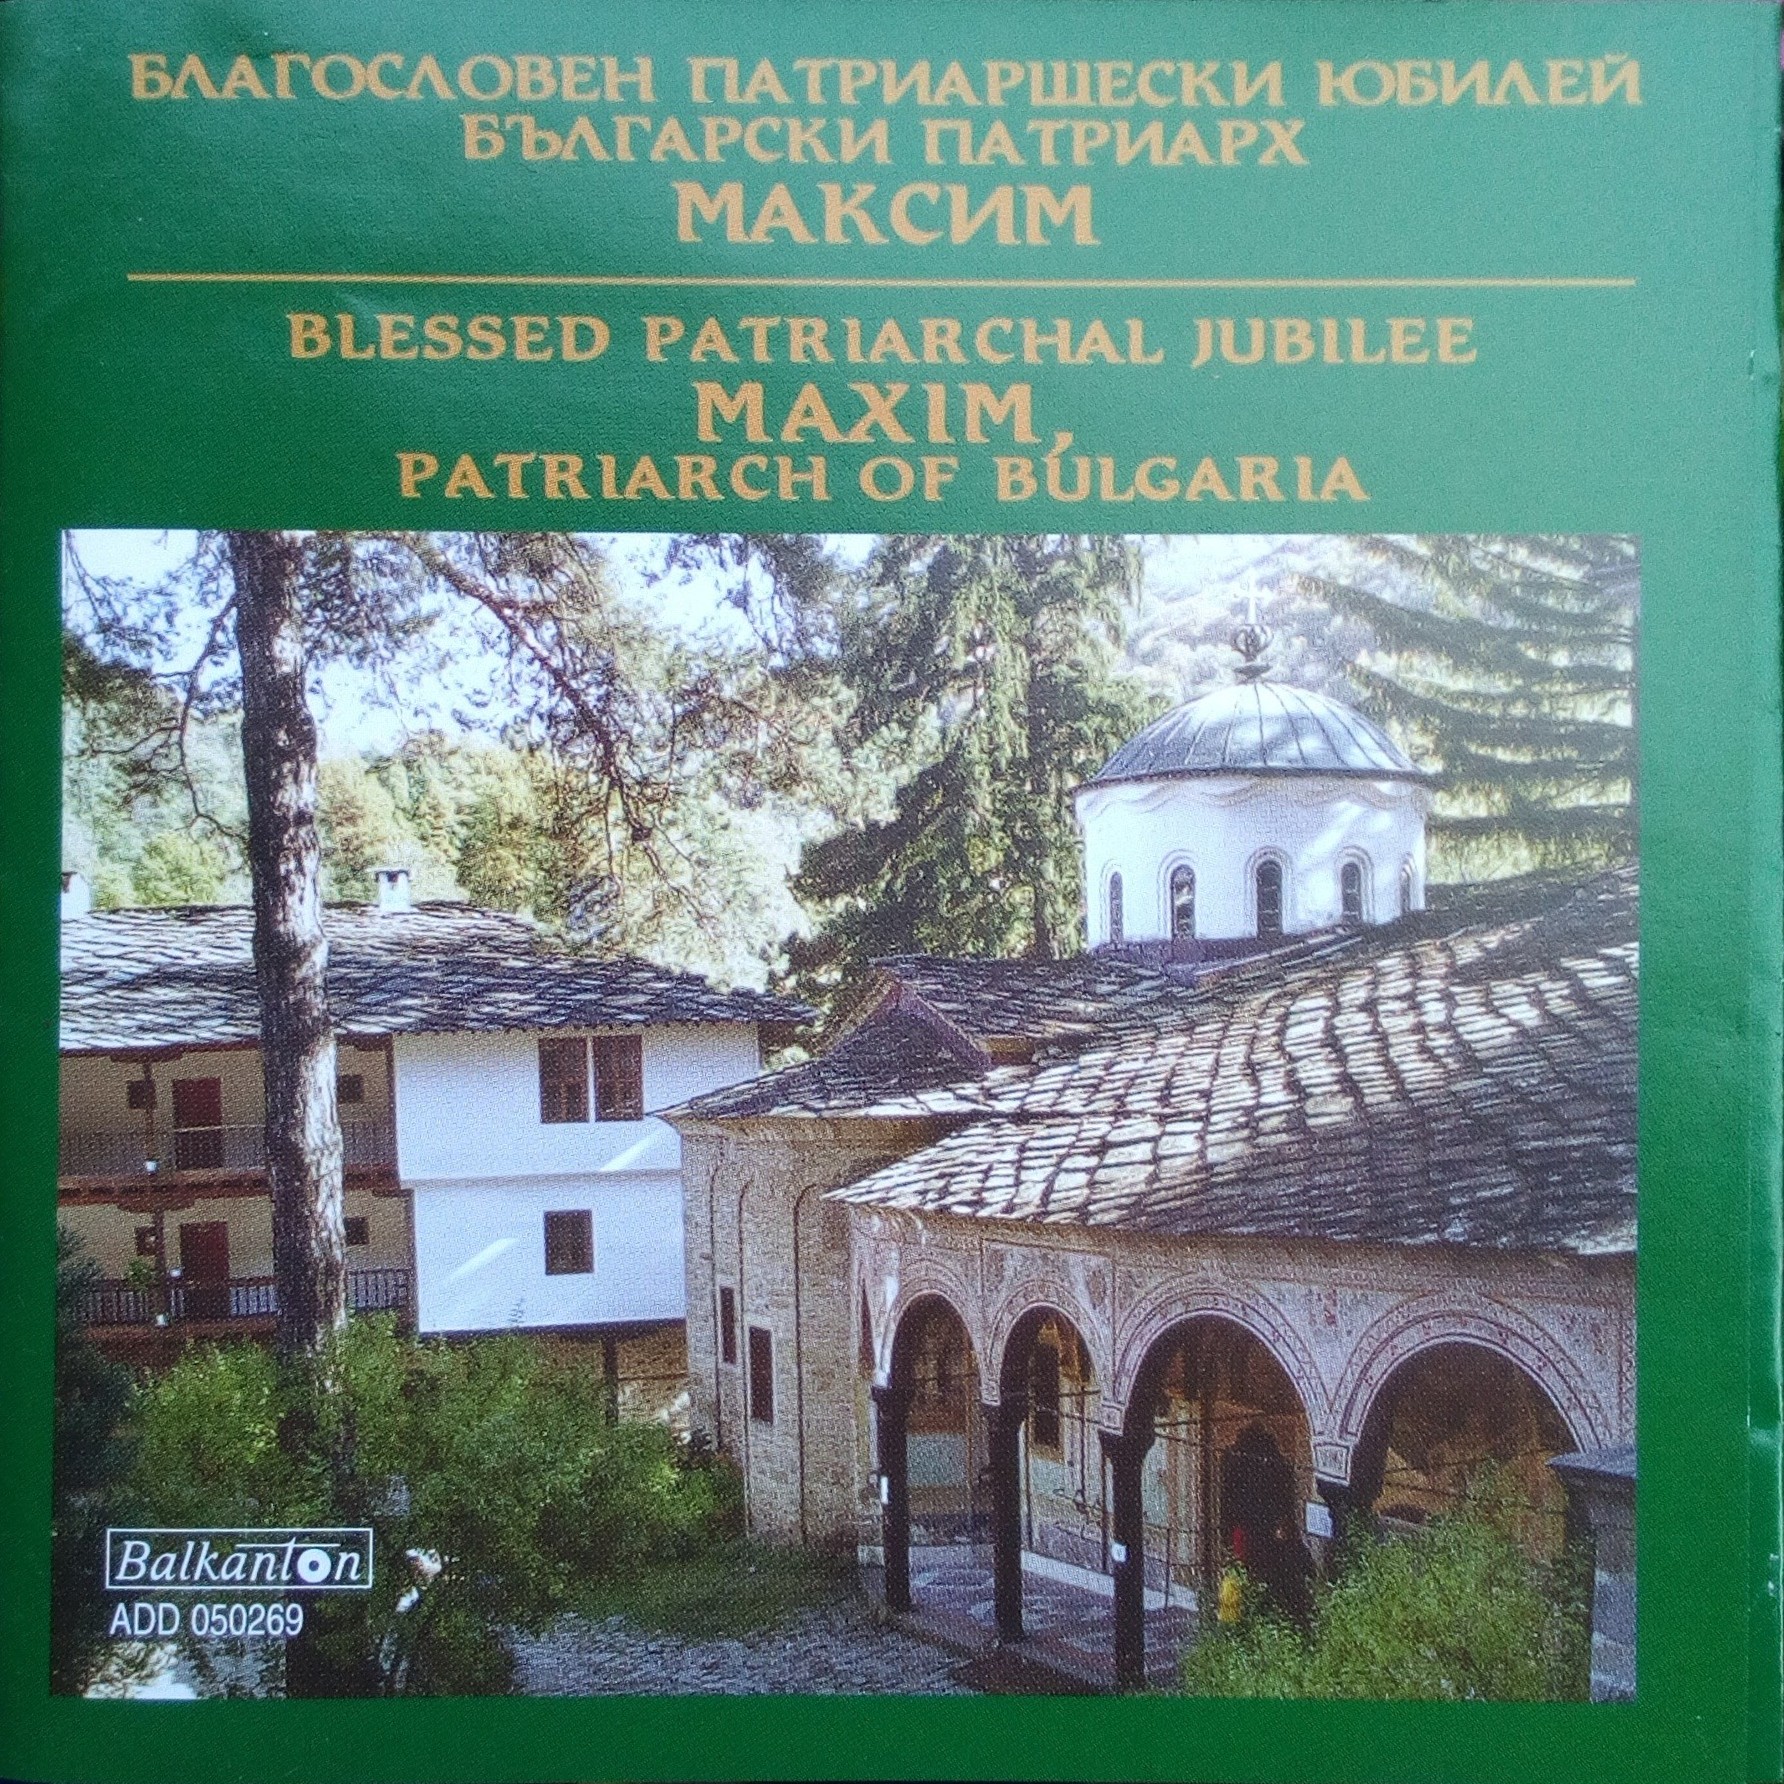 Благословен Патриаршески юбилей. Български Патриарх Максим